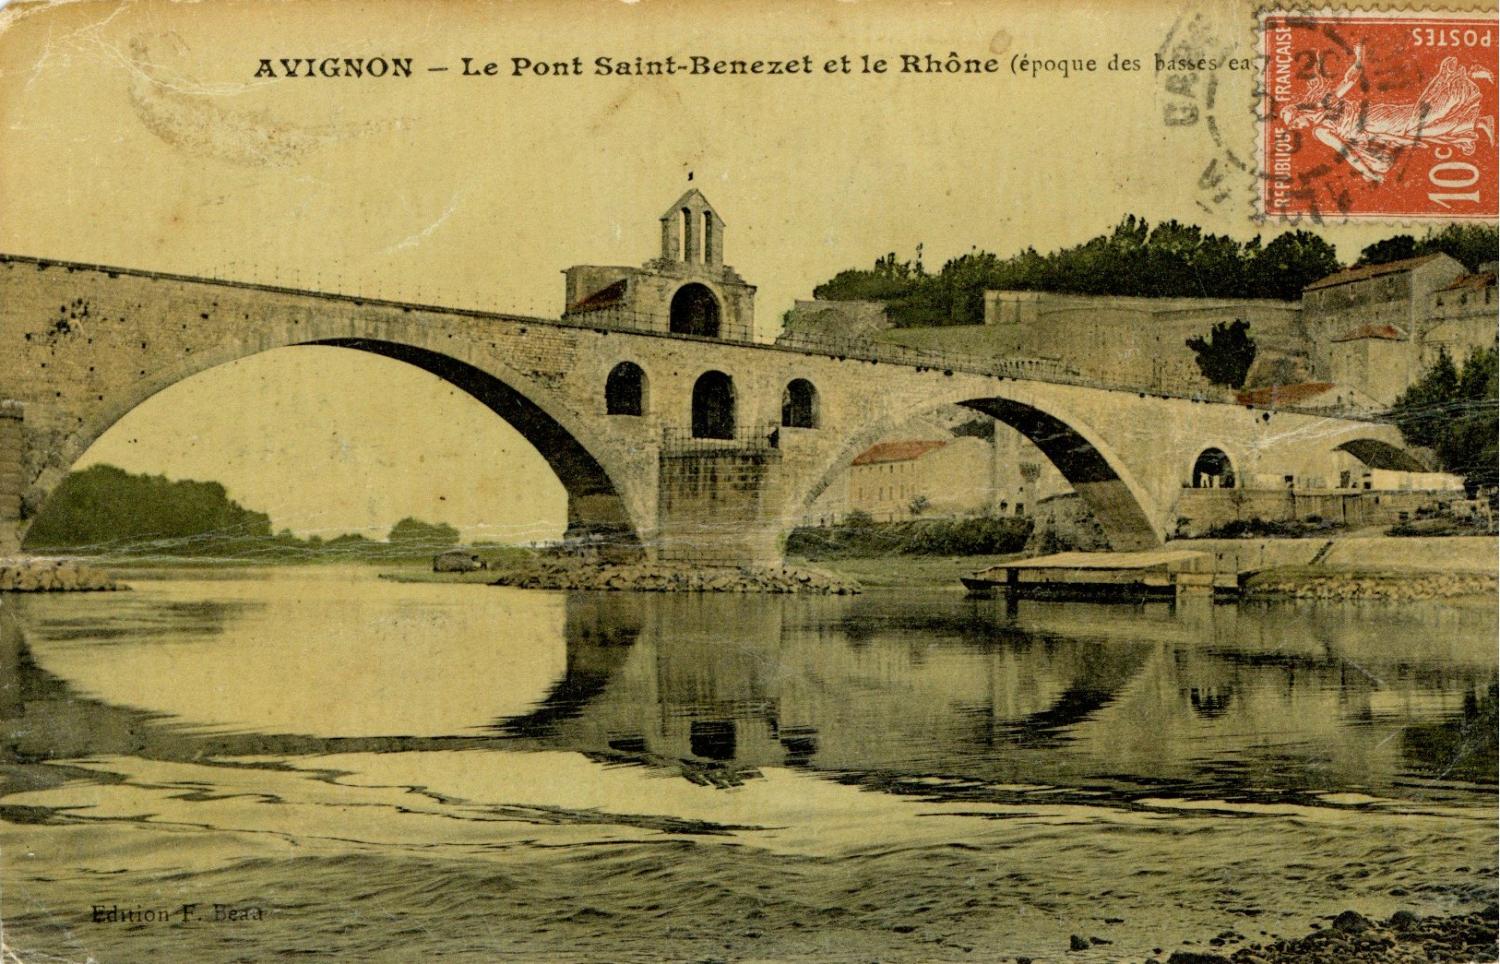 Avignon - Le Pont Saint-Bénézet et le Rhône (époque des basses eaux)